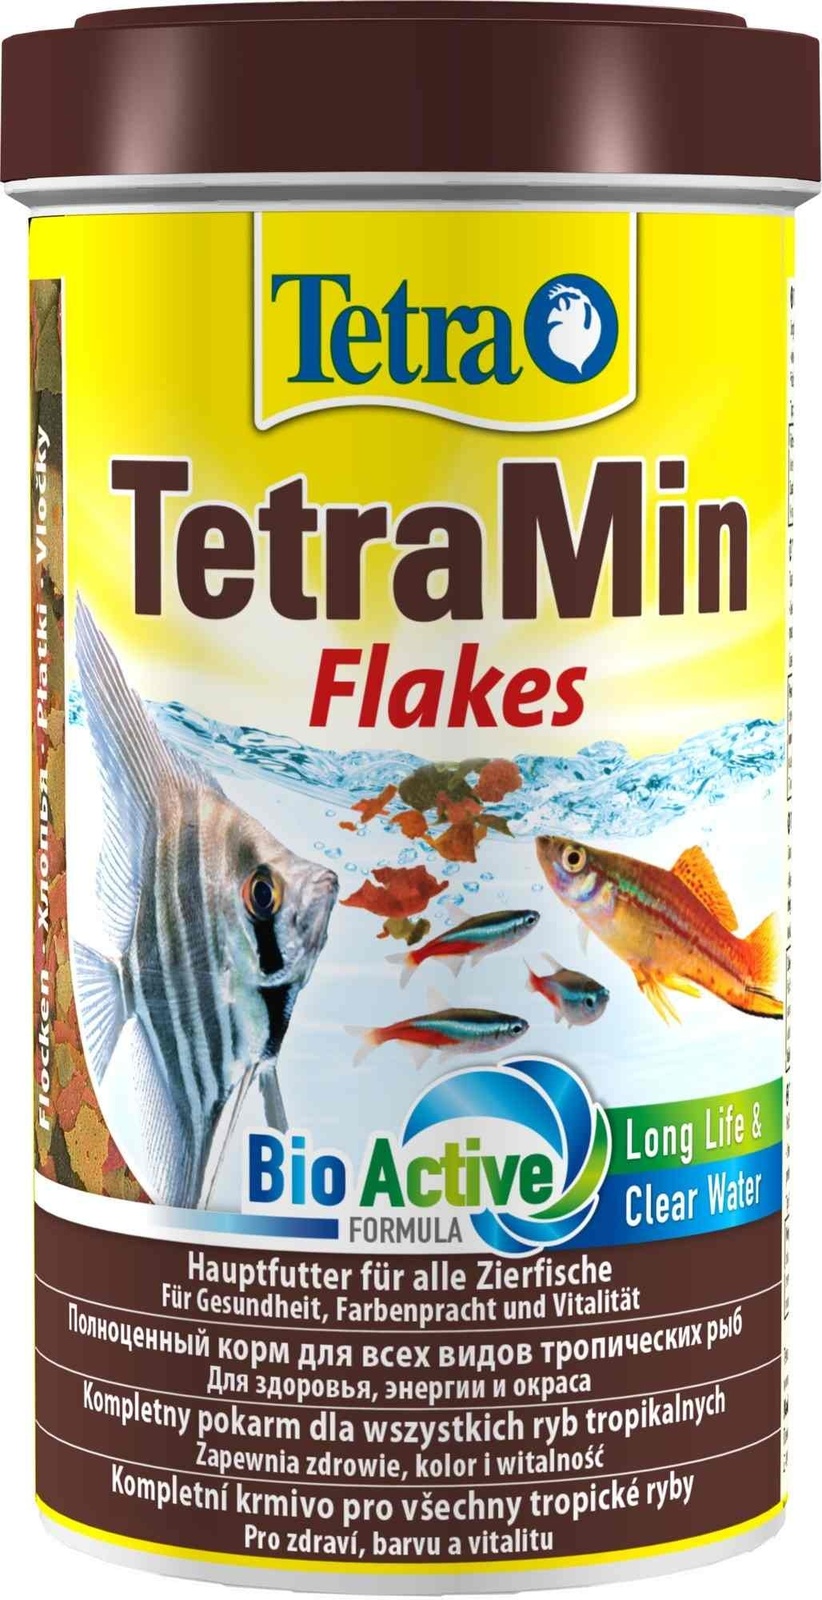 Tetra (корма) Tetra (корма) корм для всех видов тропических рыб. хлопья TetraMin Flakes (100 г) tetra корма tetra корма корм для всех видов тропических рыб хлопья tetramin flakes 100 г